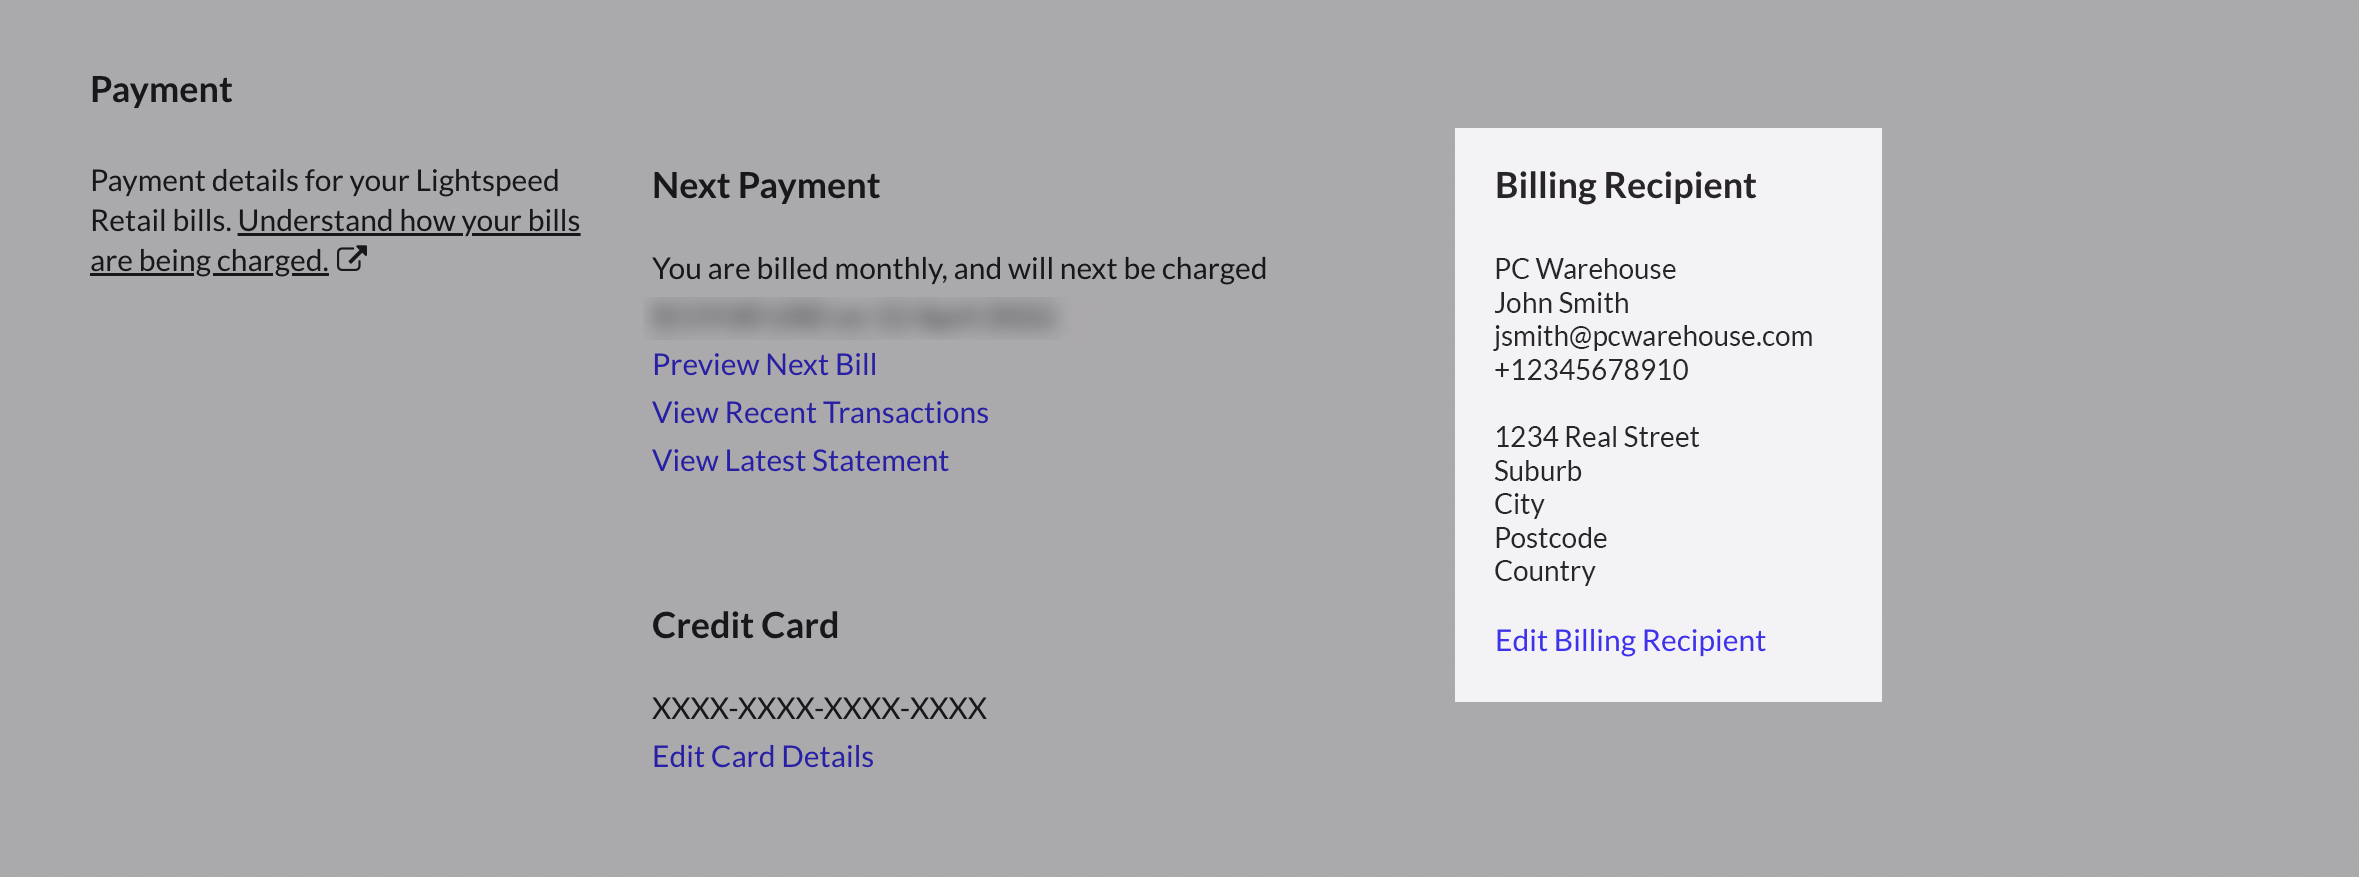 Credit-Card-Billing-Receipiant-Details.png